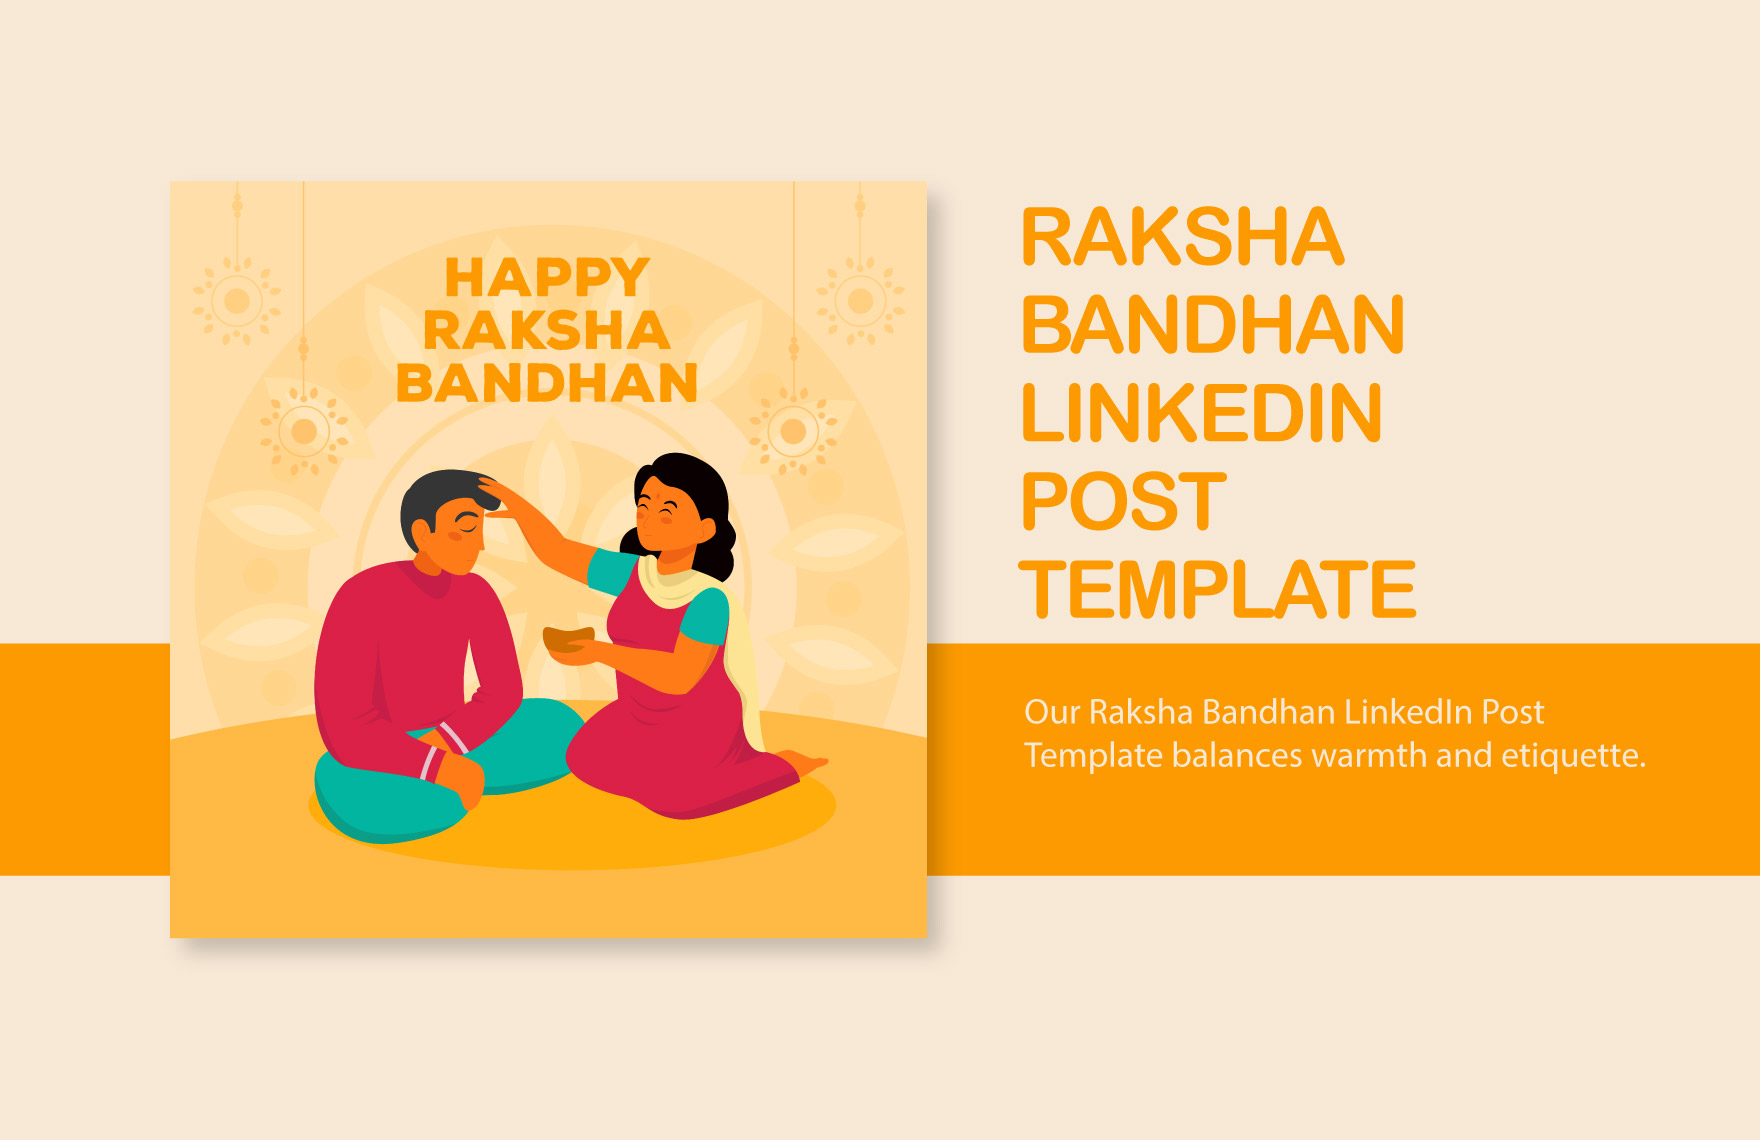 Free Raksha Bandhan LinkedIn Post Template in Illustrator, PSD, PNG